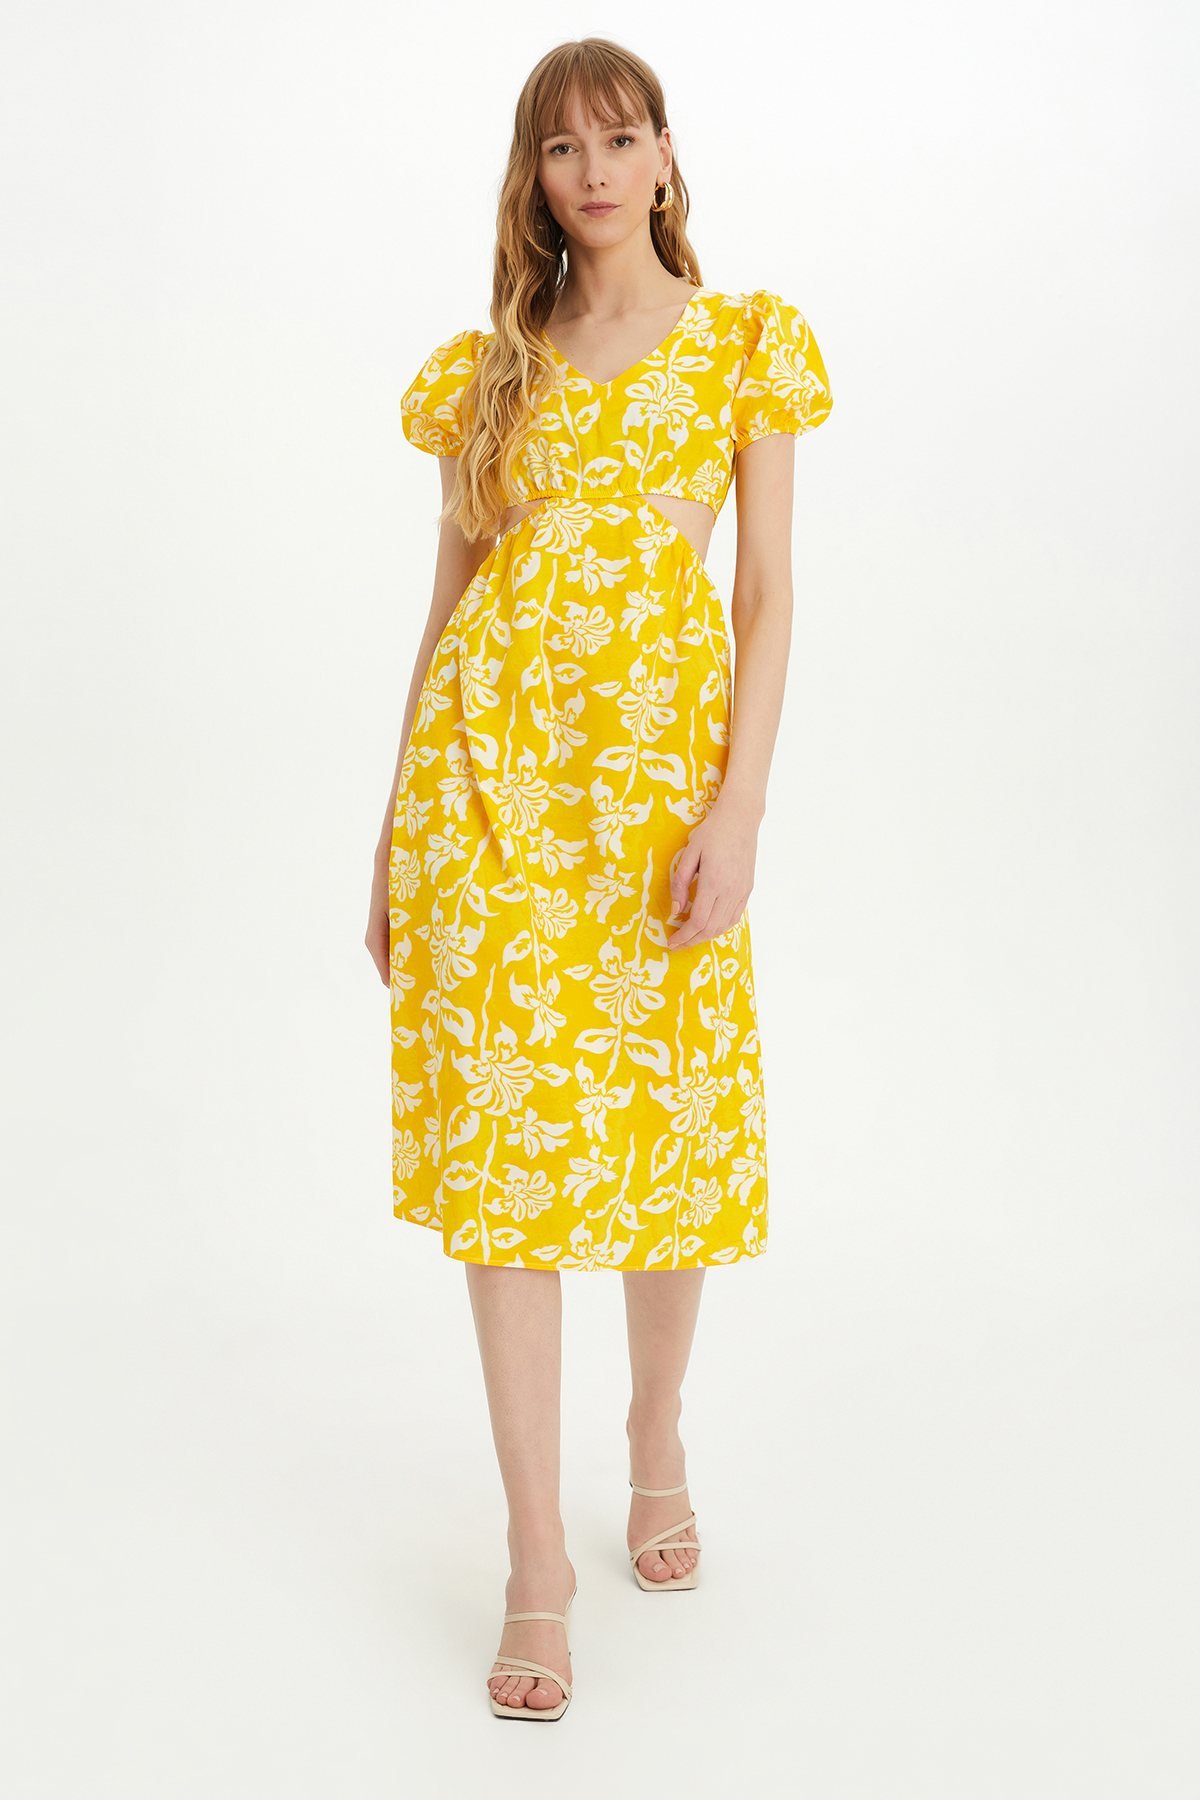 Sherin Kadın Sarı Çiçek Desenli Bel Dekolteli Yazlık Elbise